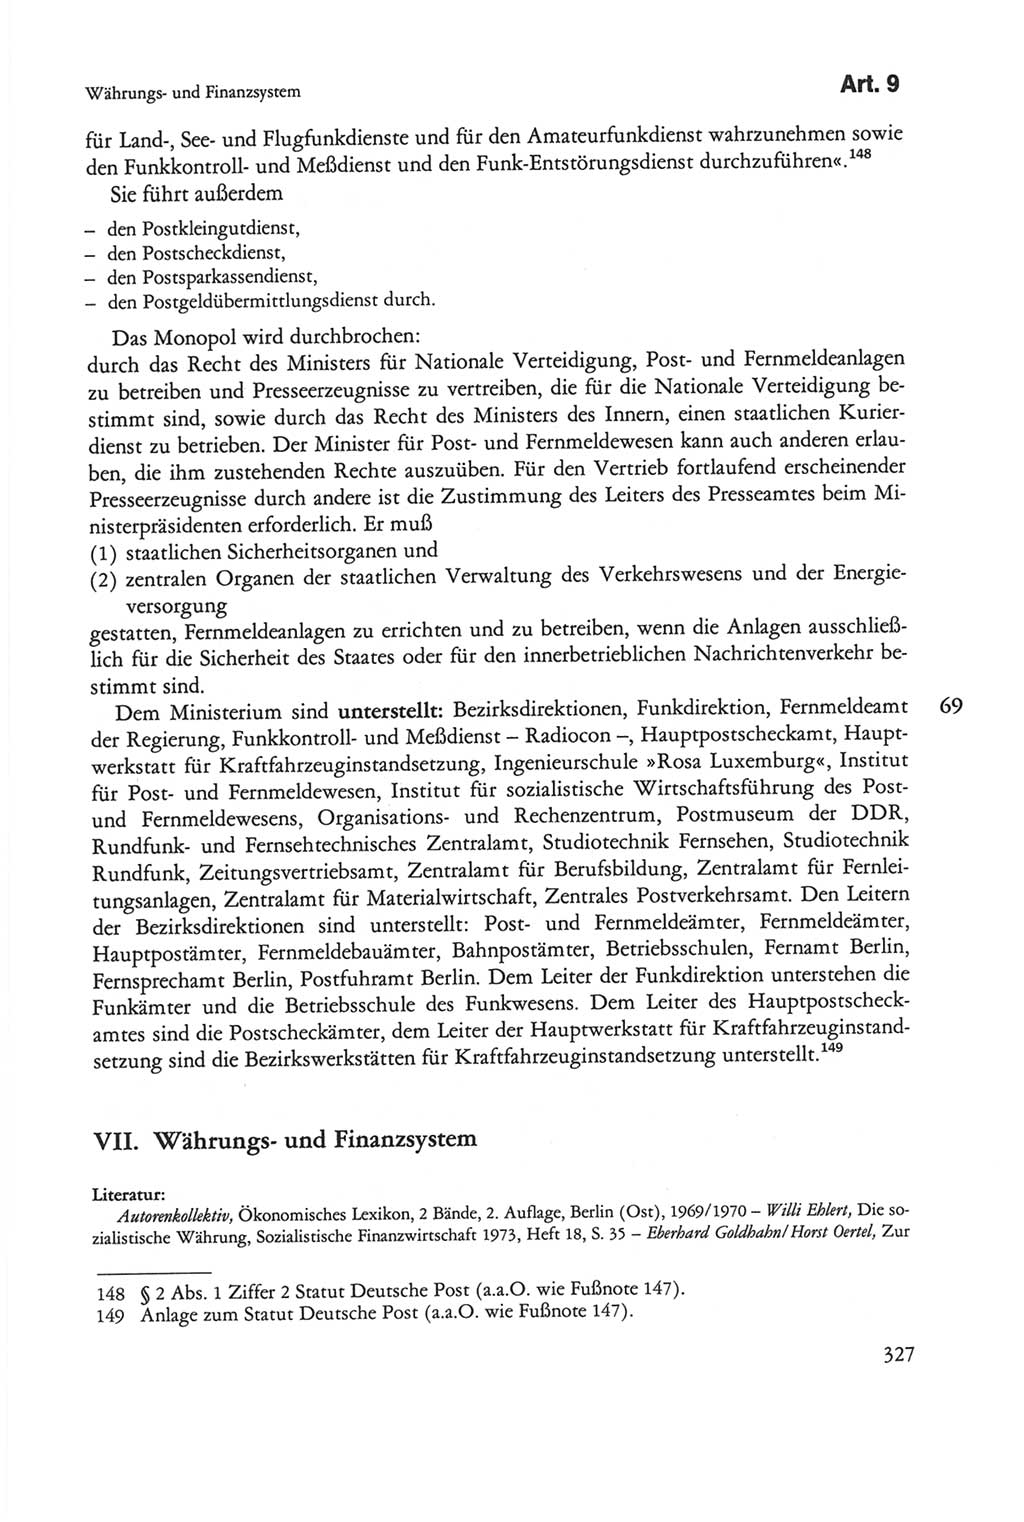 Die sozialistische Verfassung der Deutschen Demokratischen Republik (DDR), Kommentar mit einem Nachtrag 1997, Seite 327 (Soz. Verf. DDR Komm. Nachtr. 1997, S. 327)